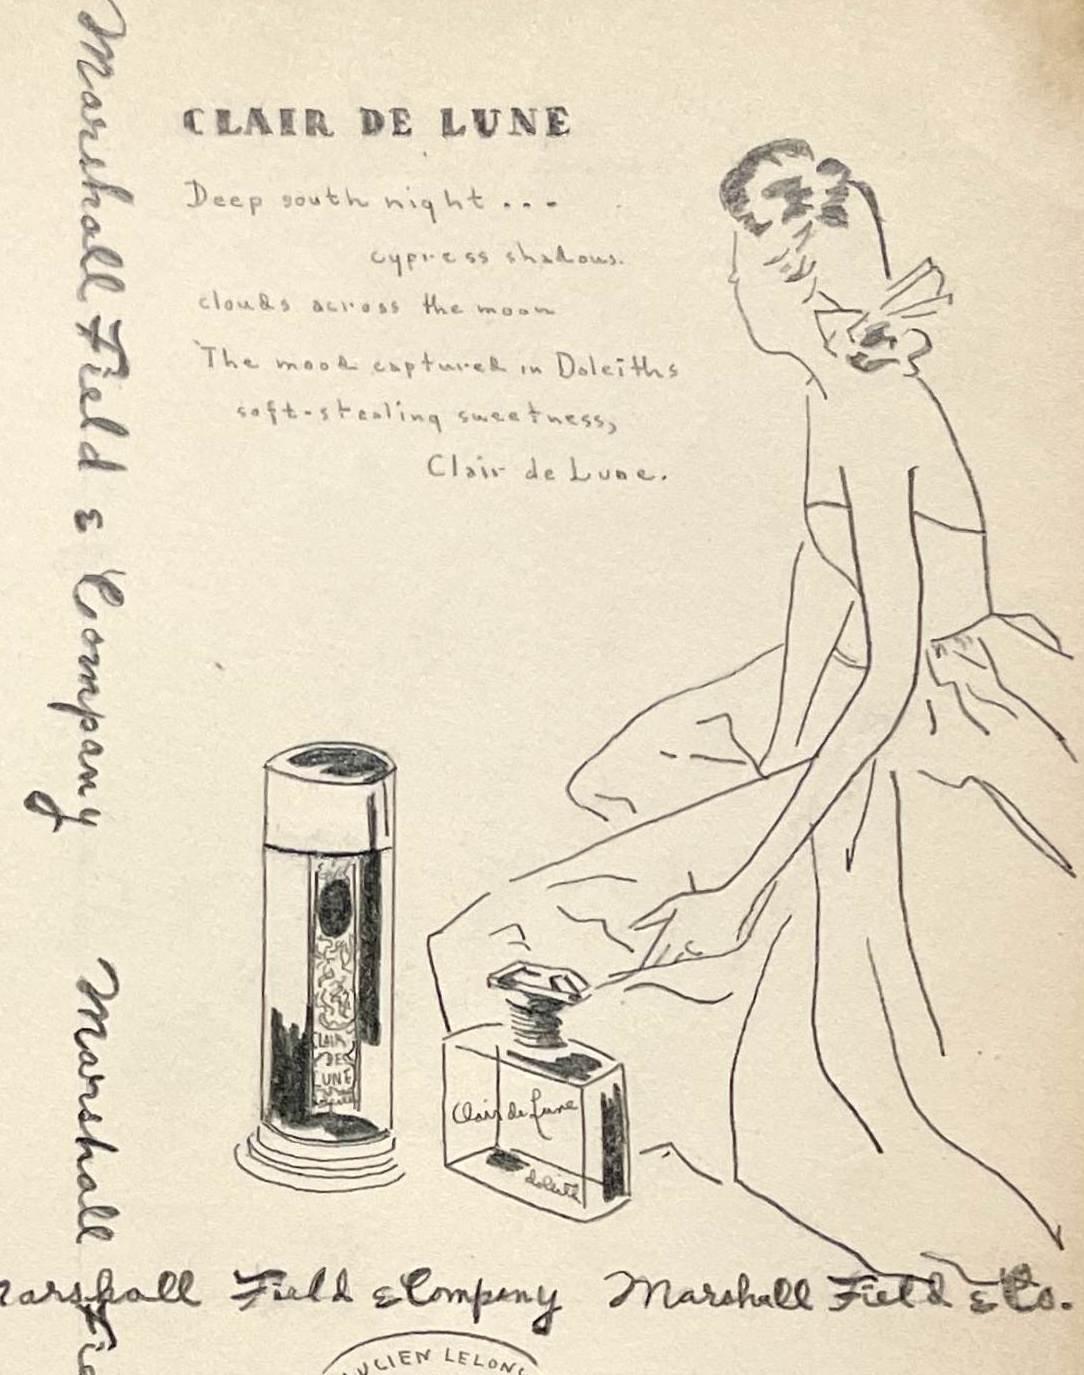 Eine Modestudie/Werbung der frühen 1940er Jahre für Marshall Fields & Company (Art déco), Art, von Unknown